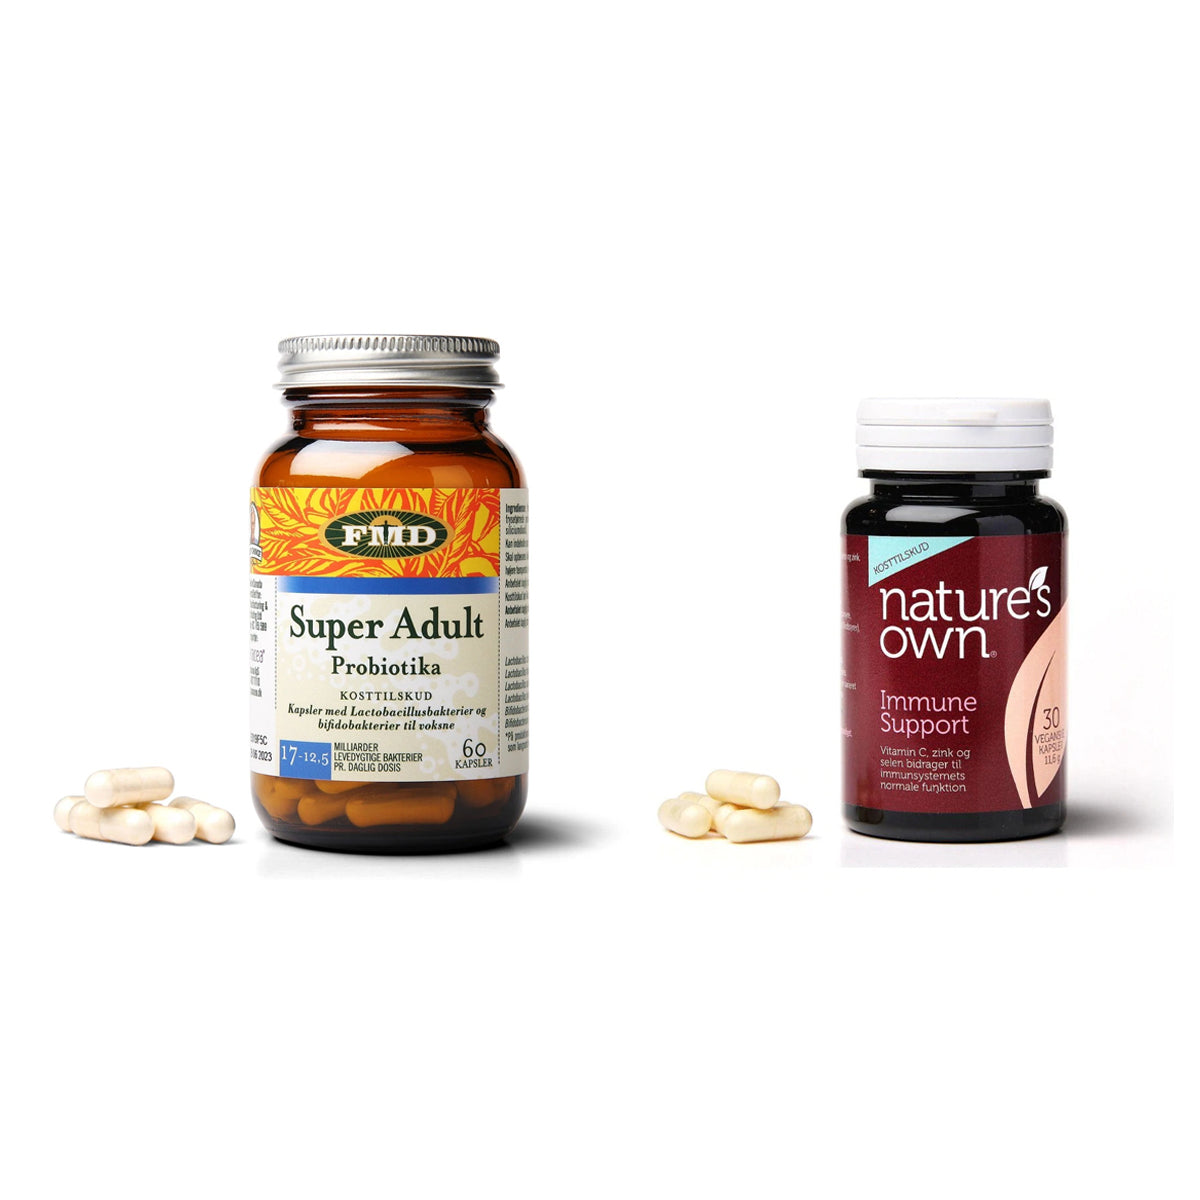 Mave & Sæk Vitaminpakke